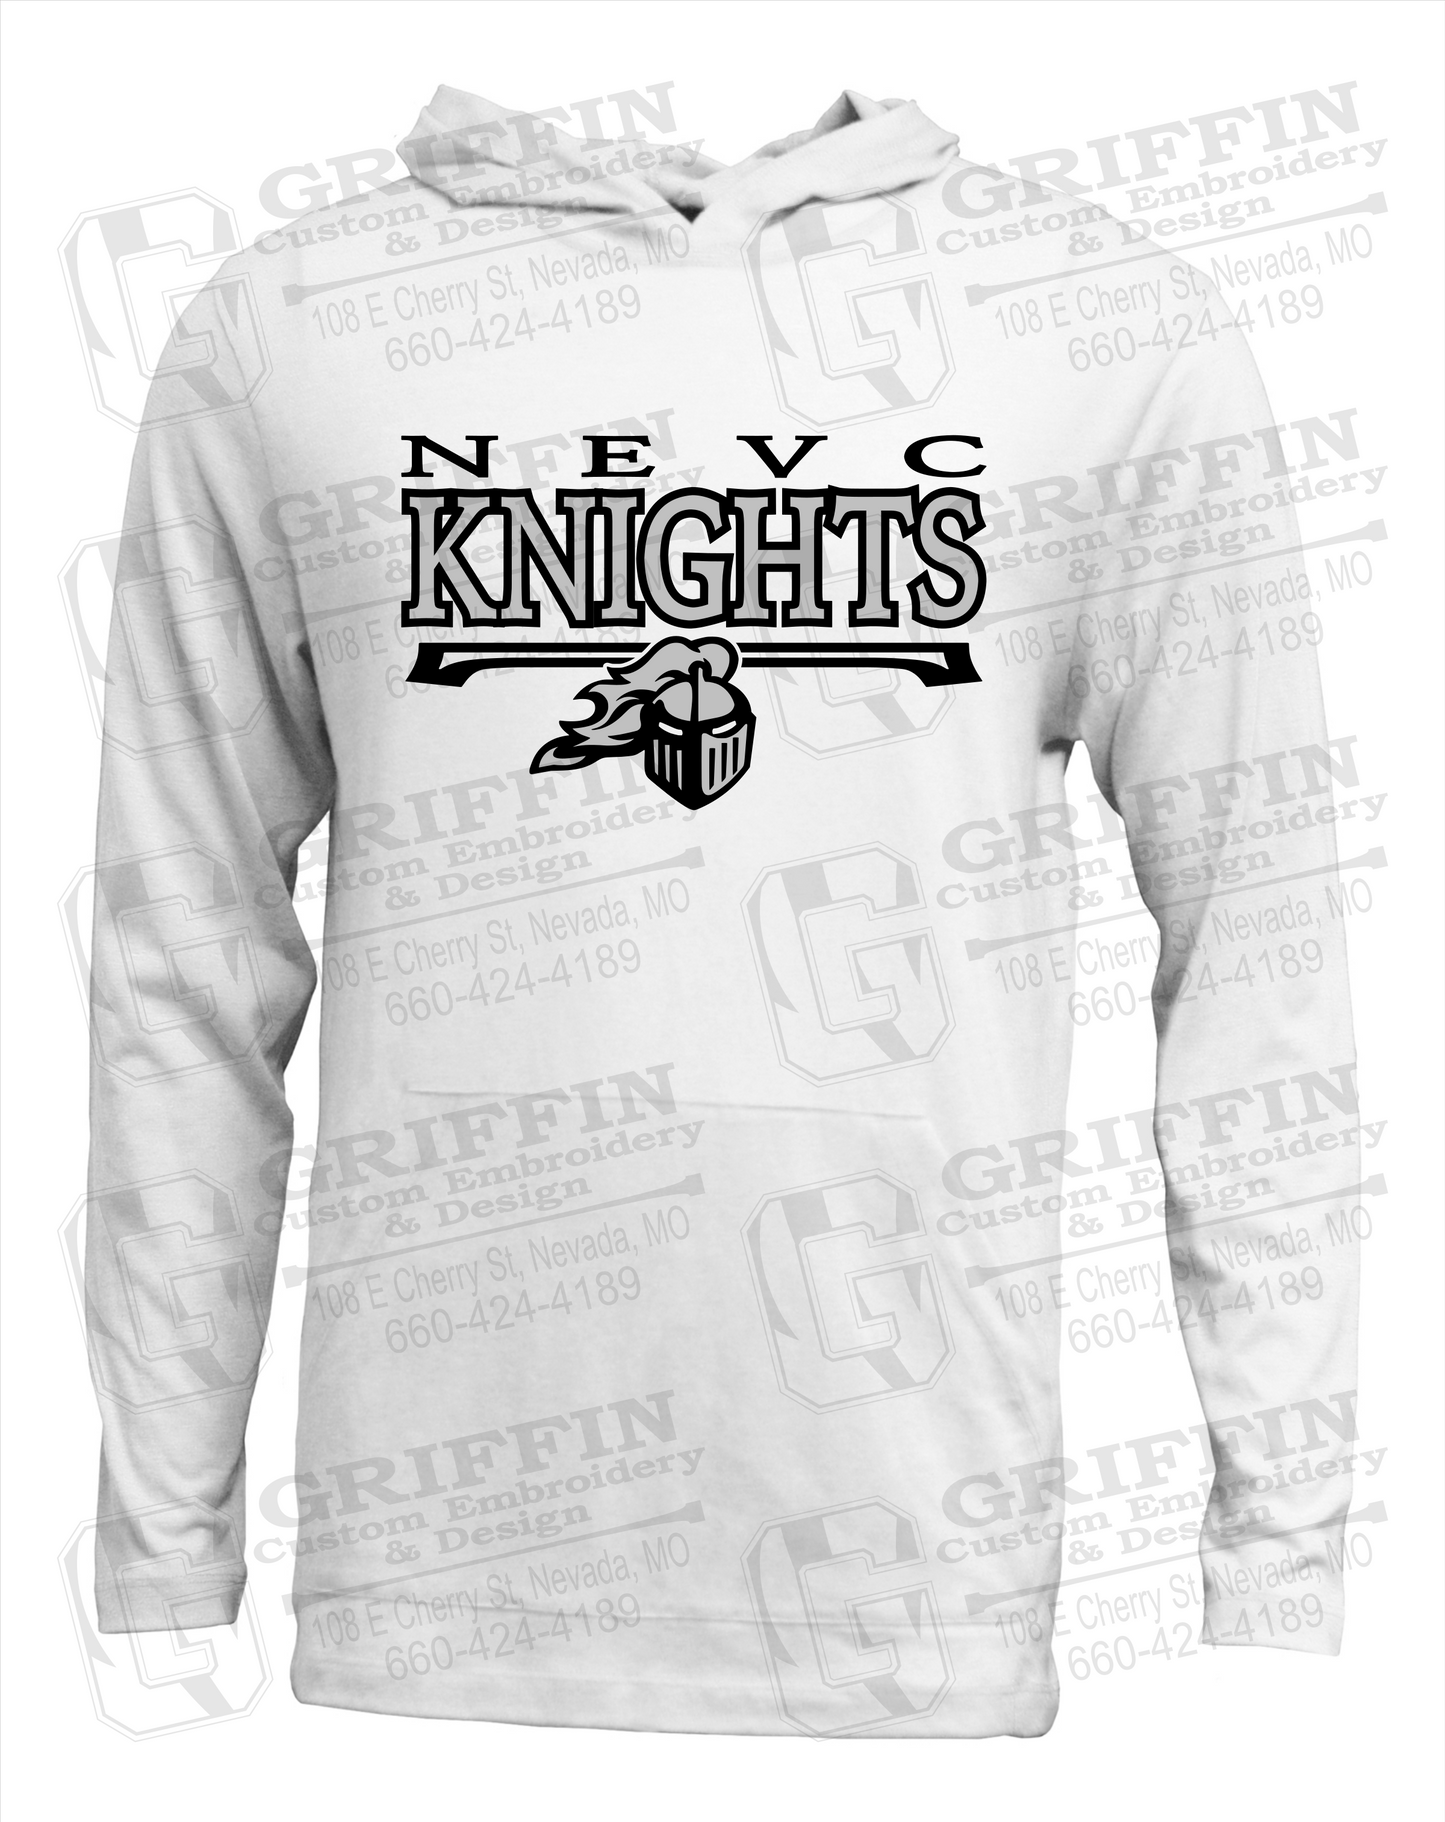 NEVC Knights 23-A Lightweight Hoodie